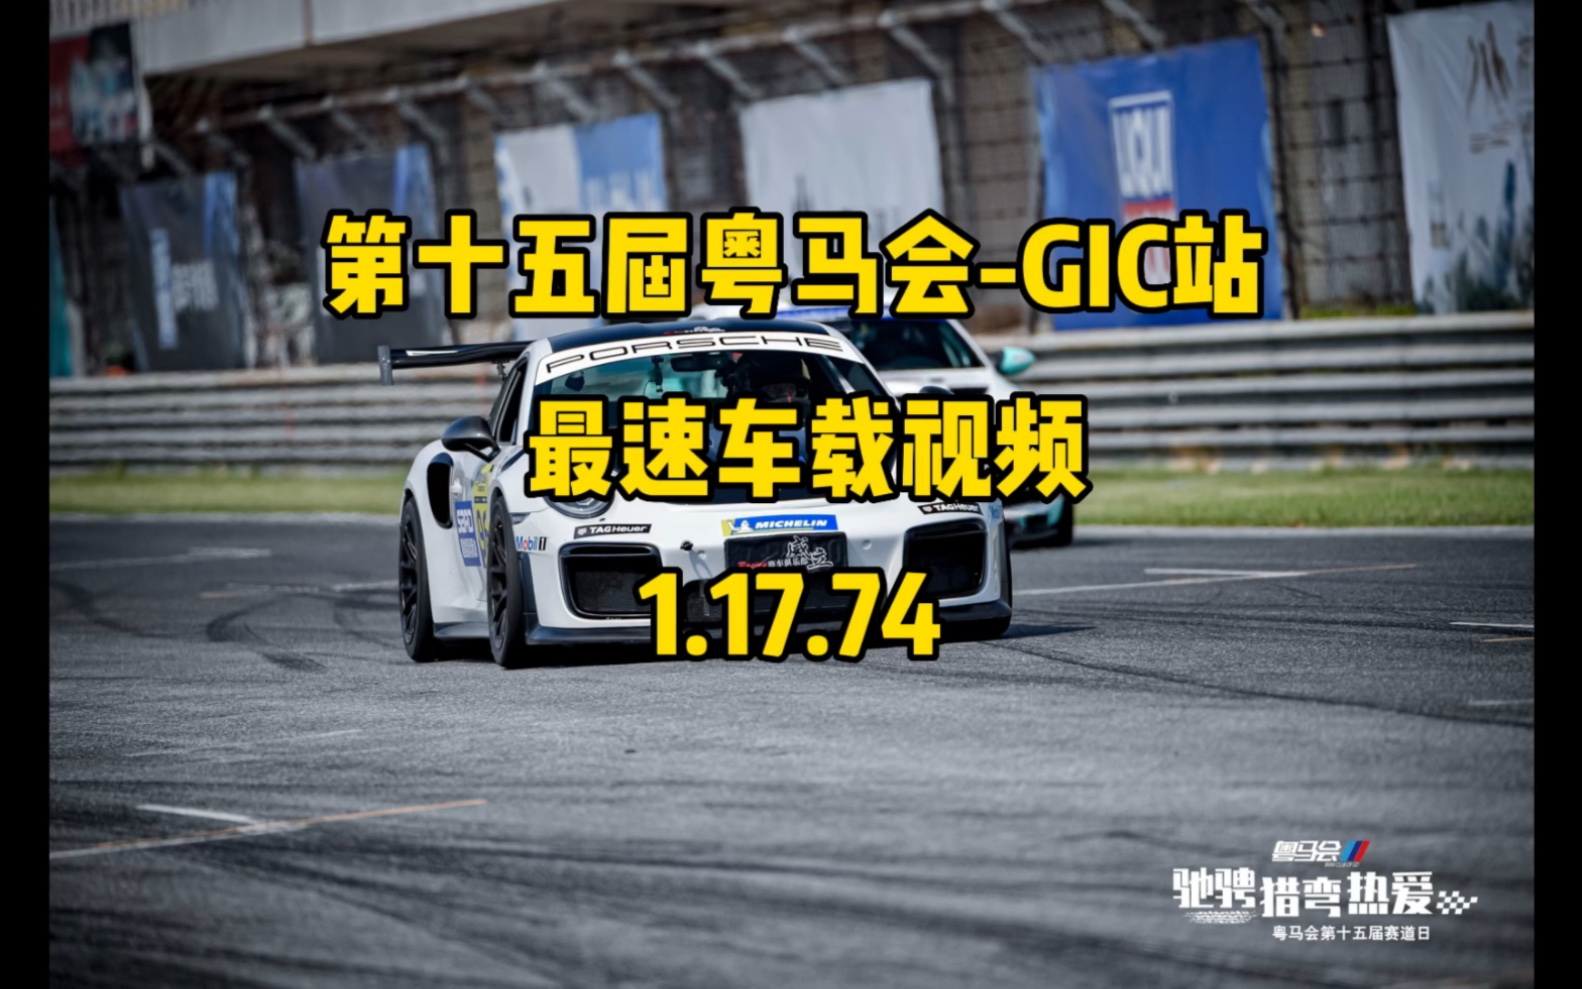 广东国际赛车场911turbos圈速车载1分17.74。